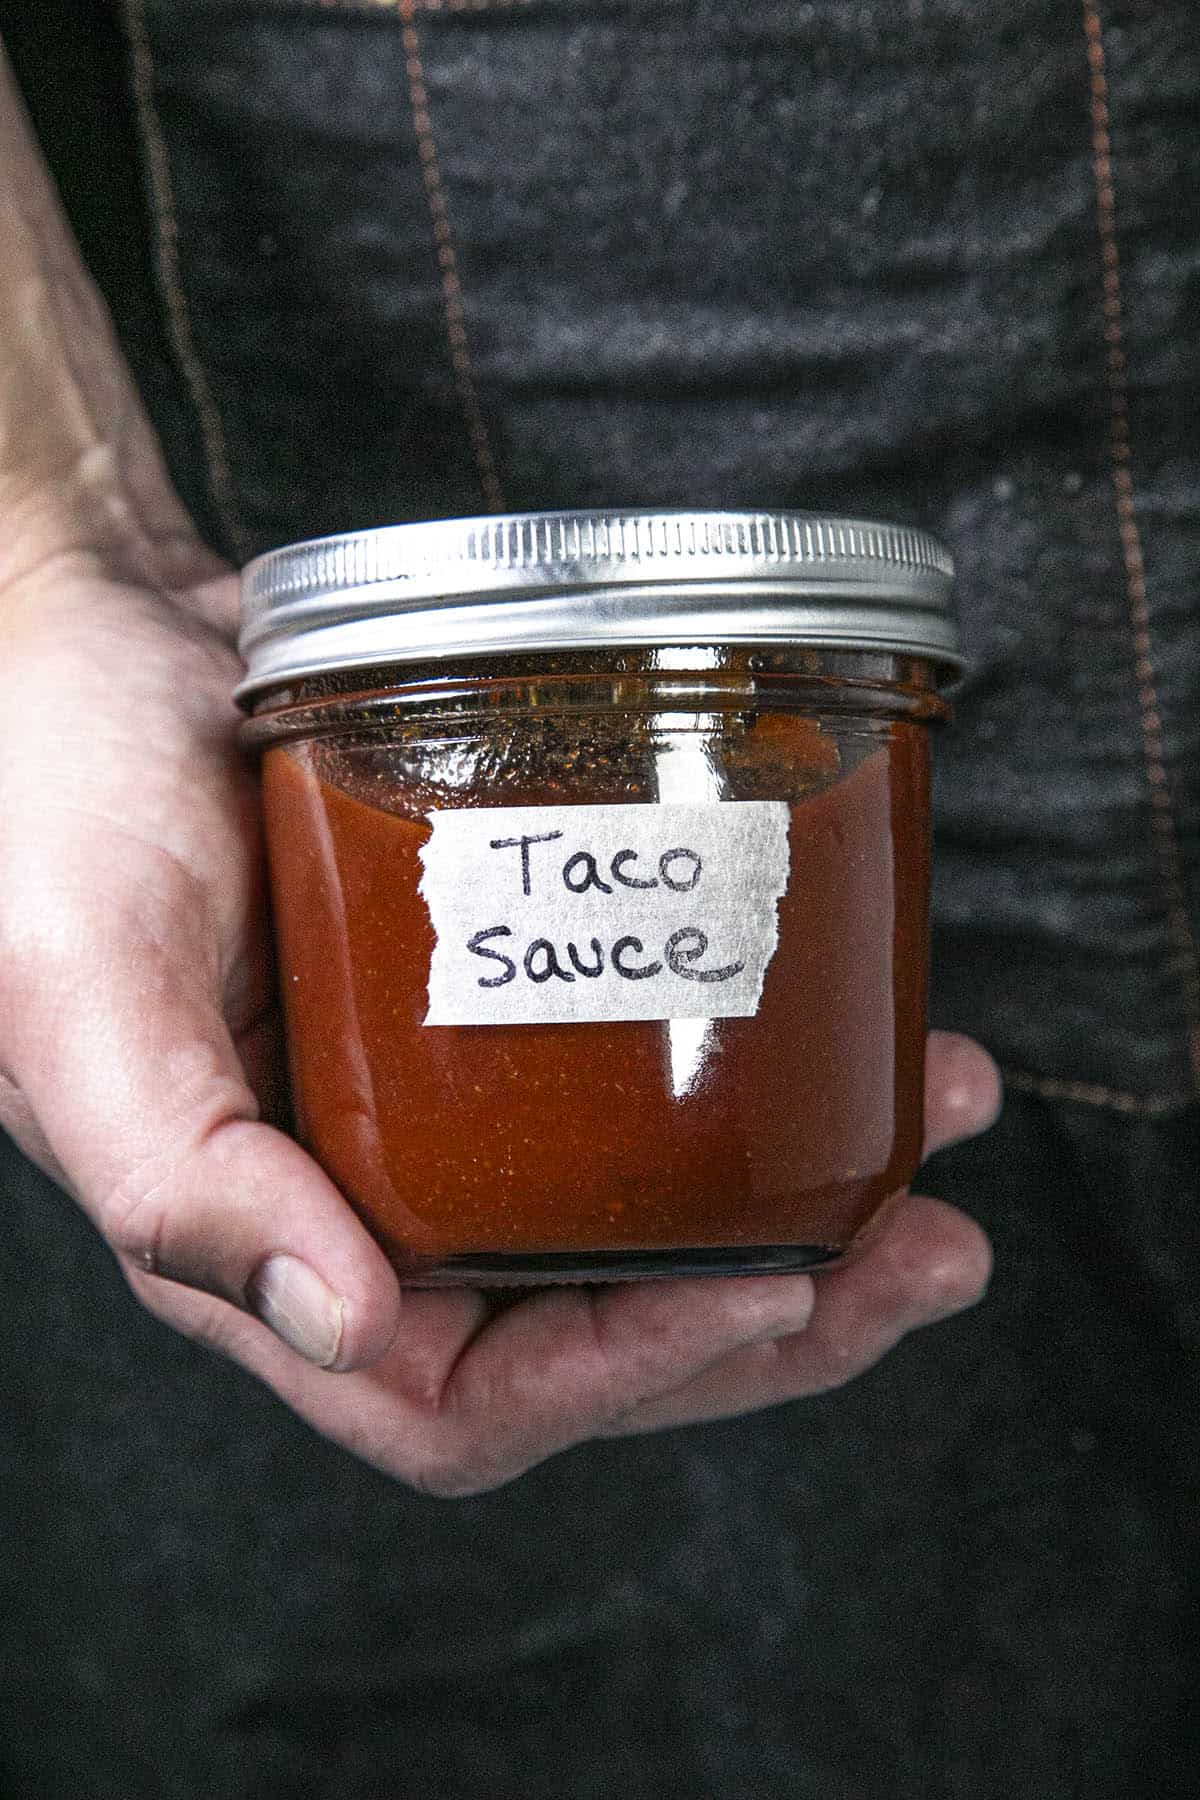 A jar of taco sauce